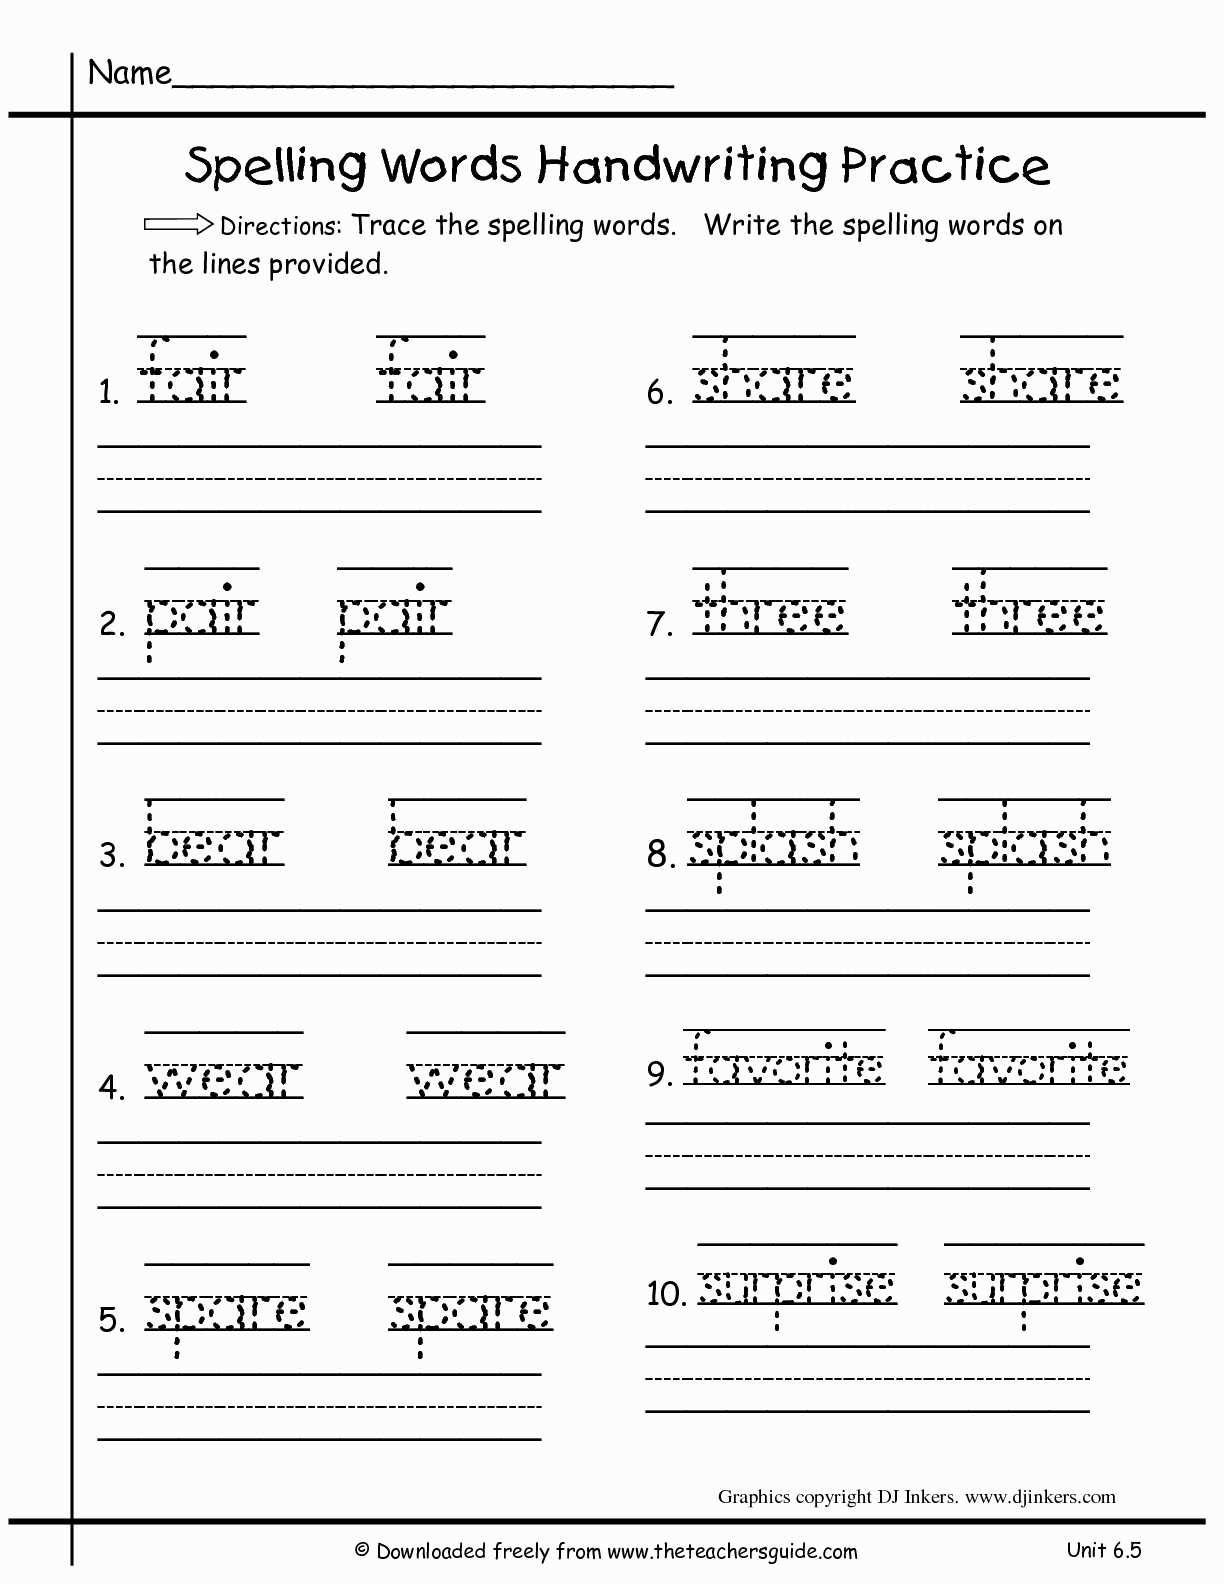 Worksheet : Free Printable Language Arts Worksheets For 1St Grade | Free Printable Worksheets For 1St Grade Language Arts